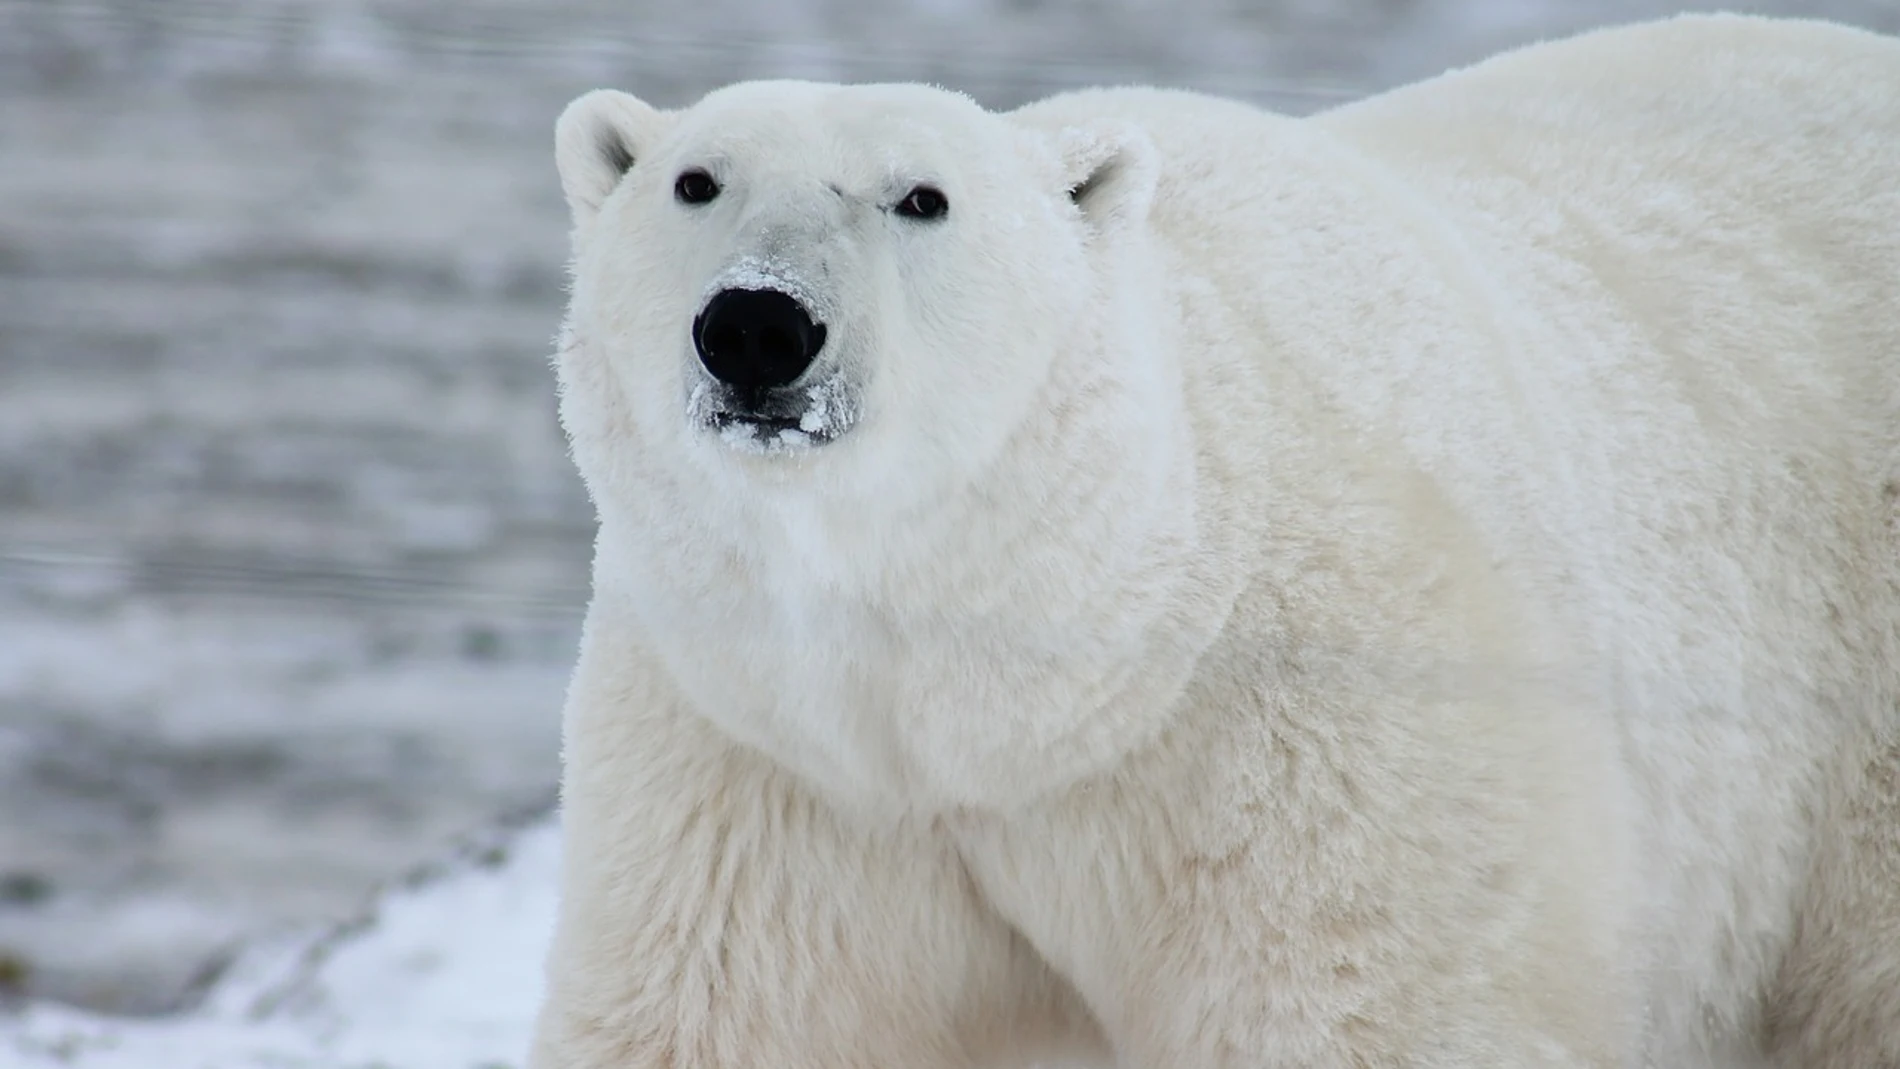 Foto de archivo de un oso polar